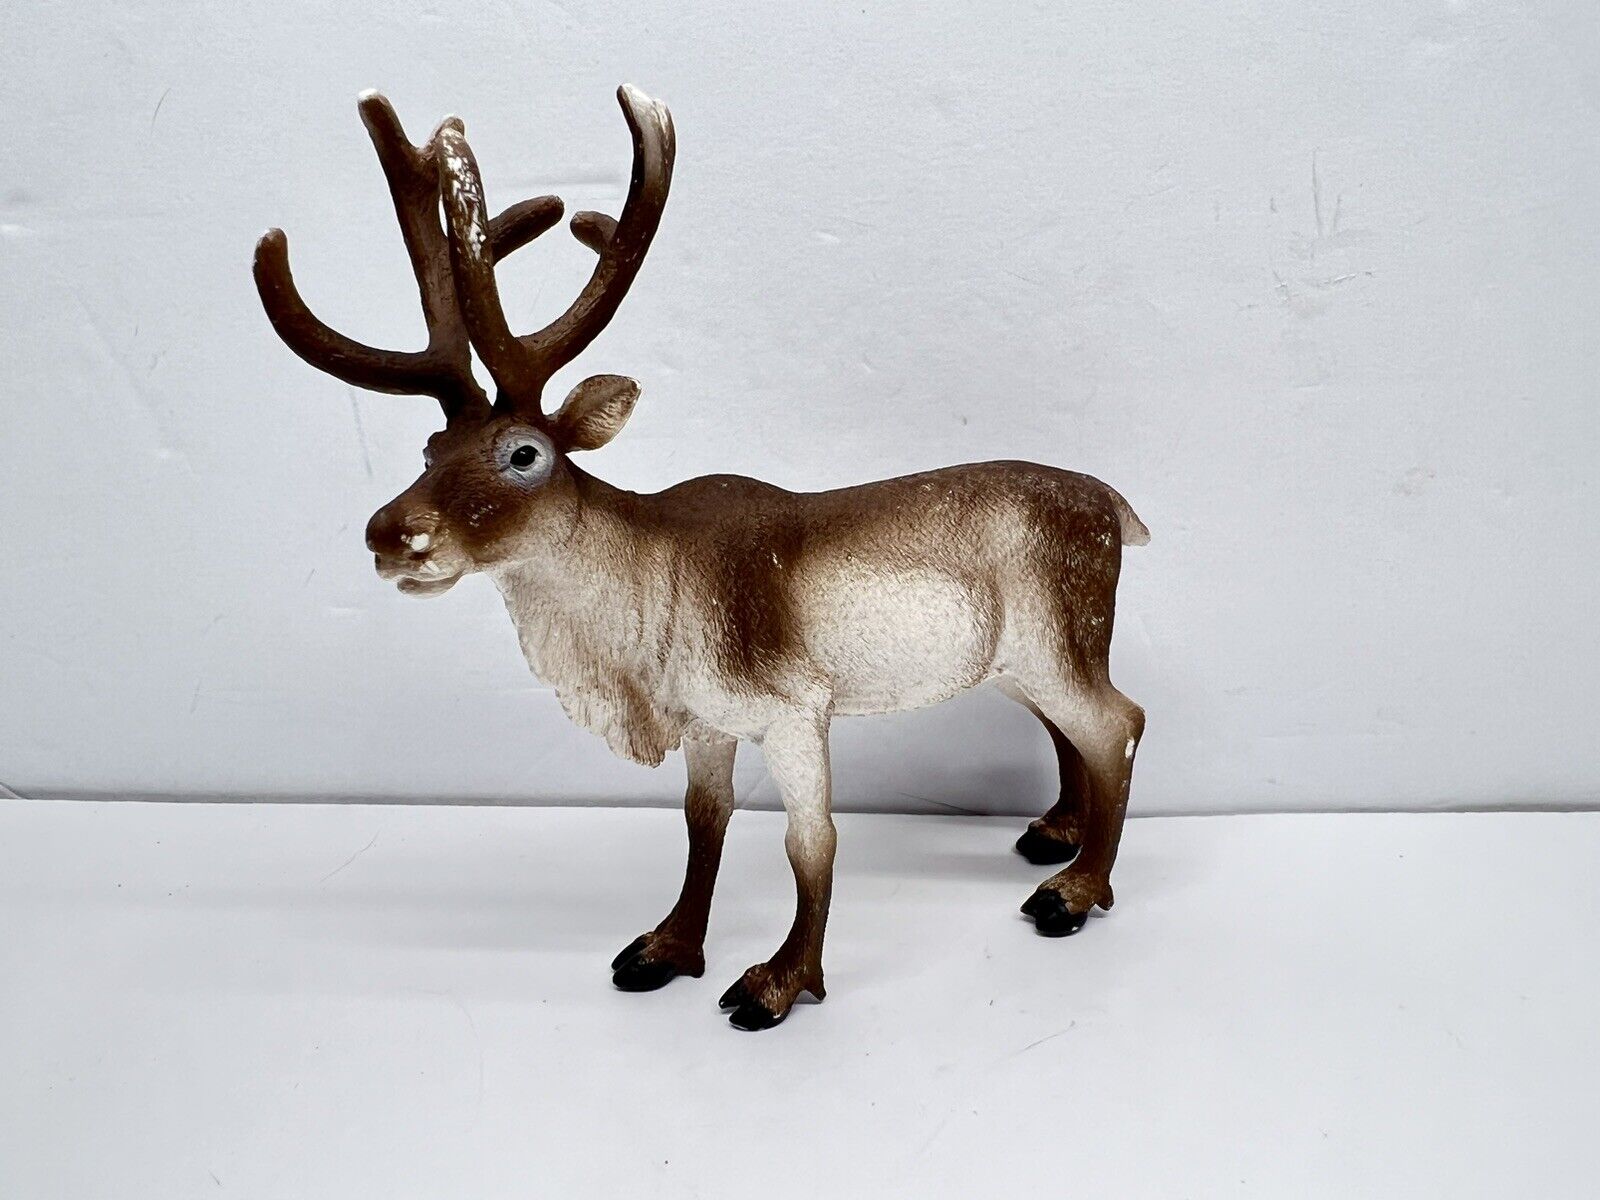 SCHLEICH Wild Life Animal Figurine REINDEER #14837 Holiday Decor HTF